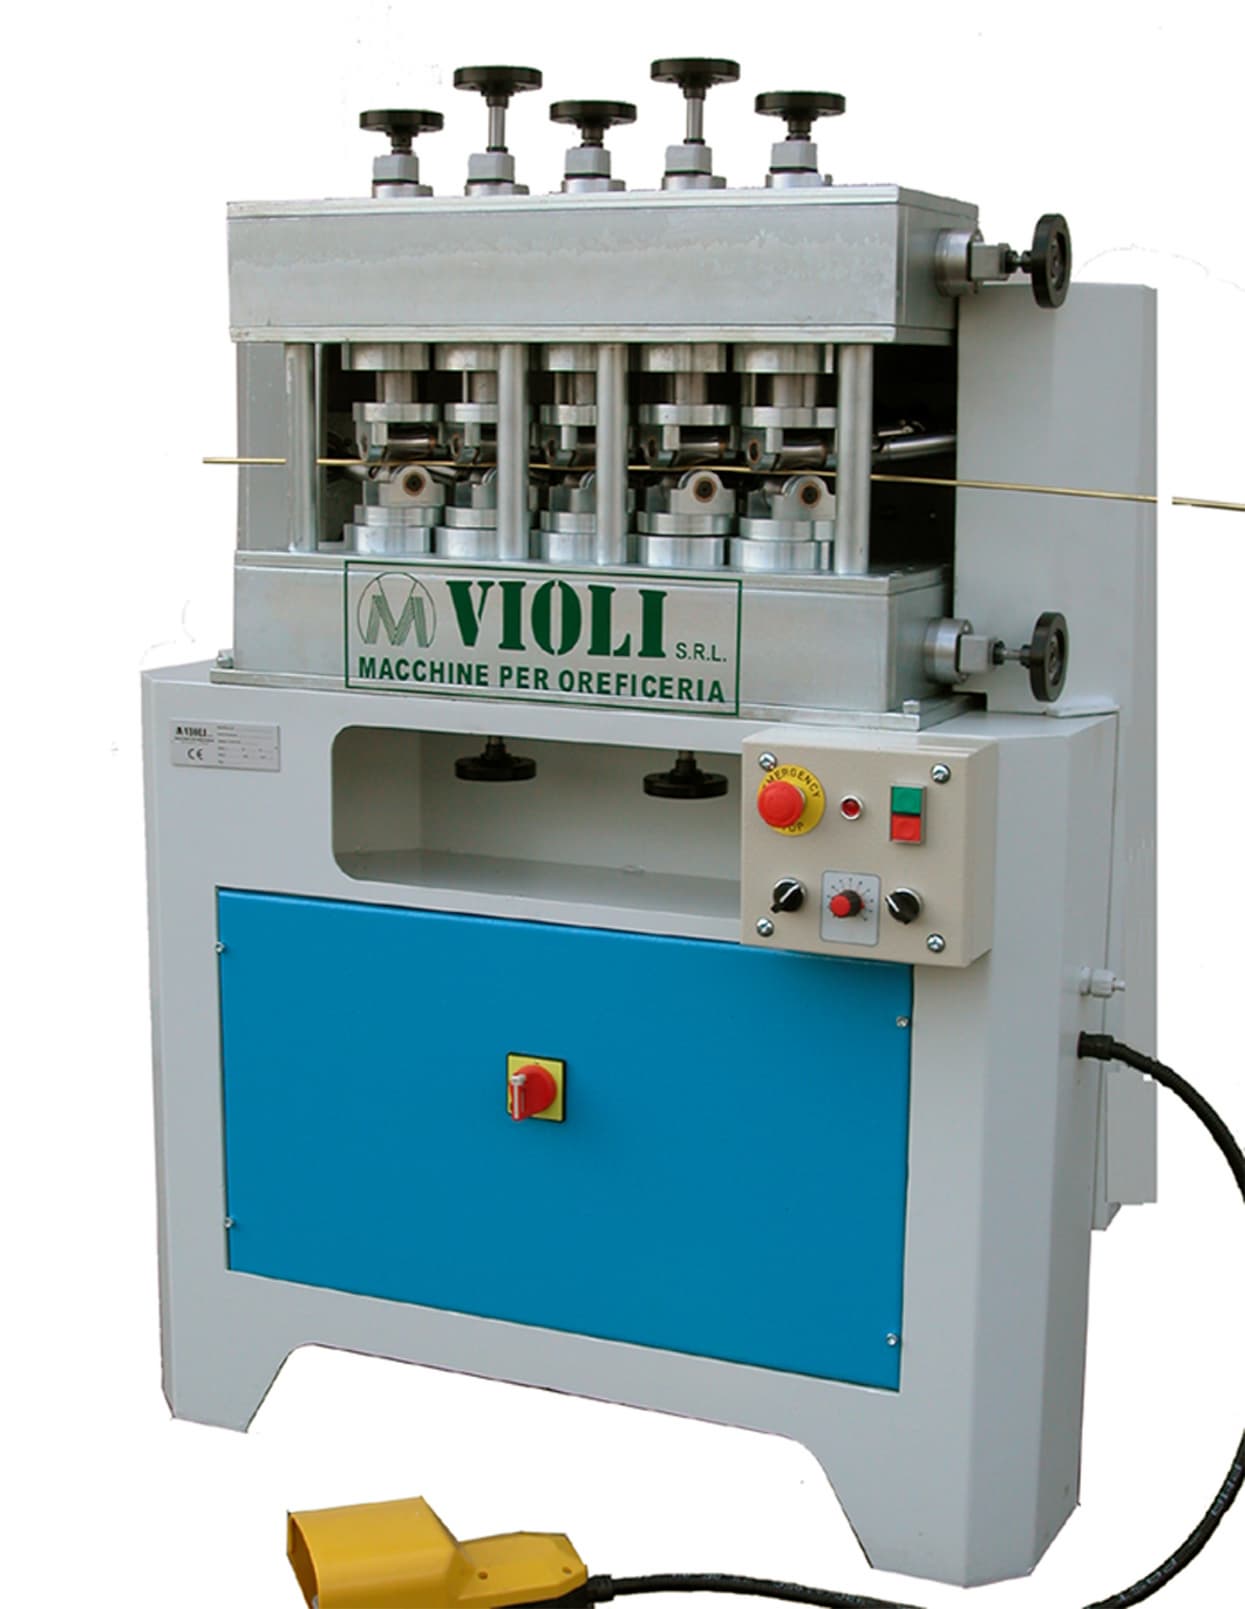 Violi straightening machines